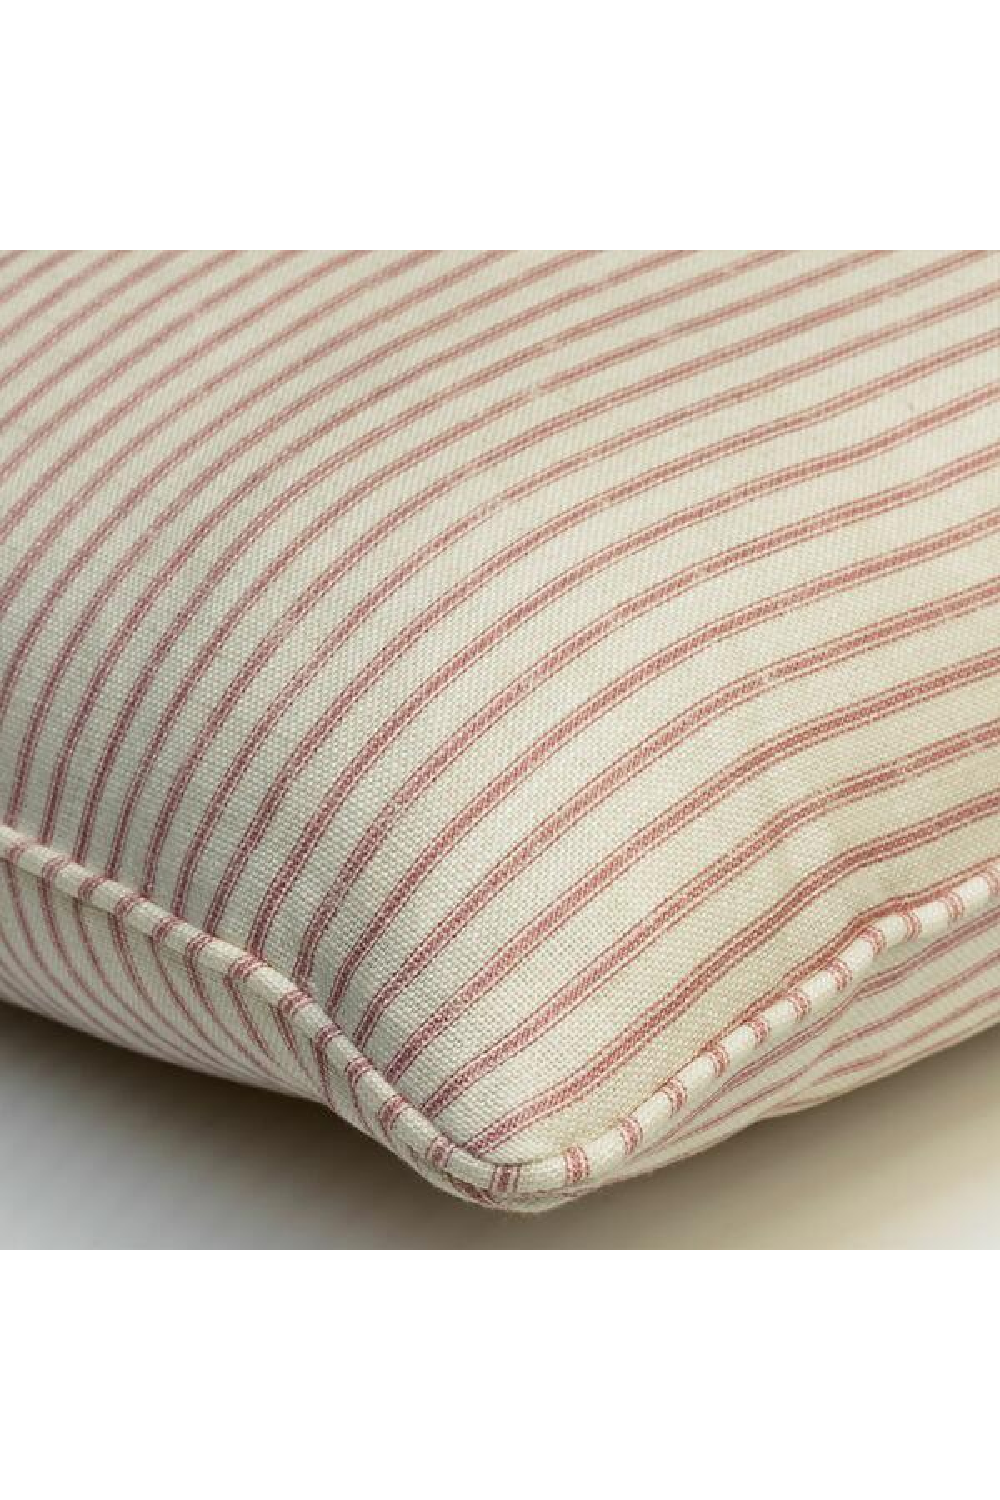 Stripe Throw Pillow | Andrew Martin Picket | Oroa.com